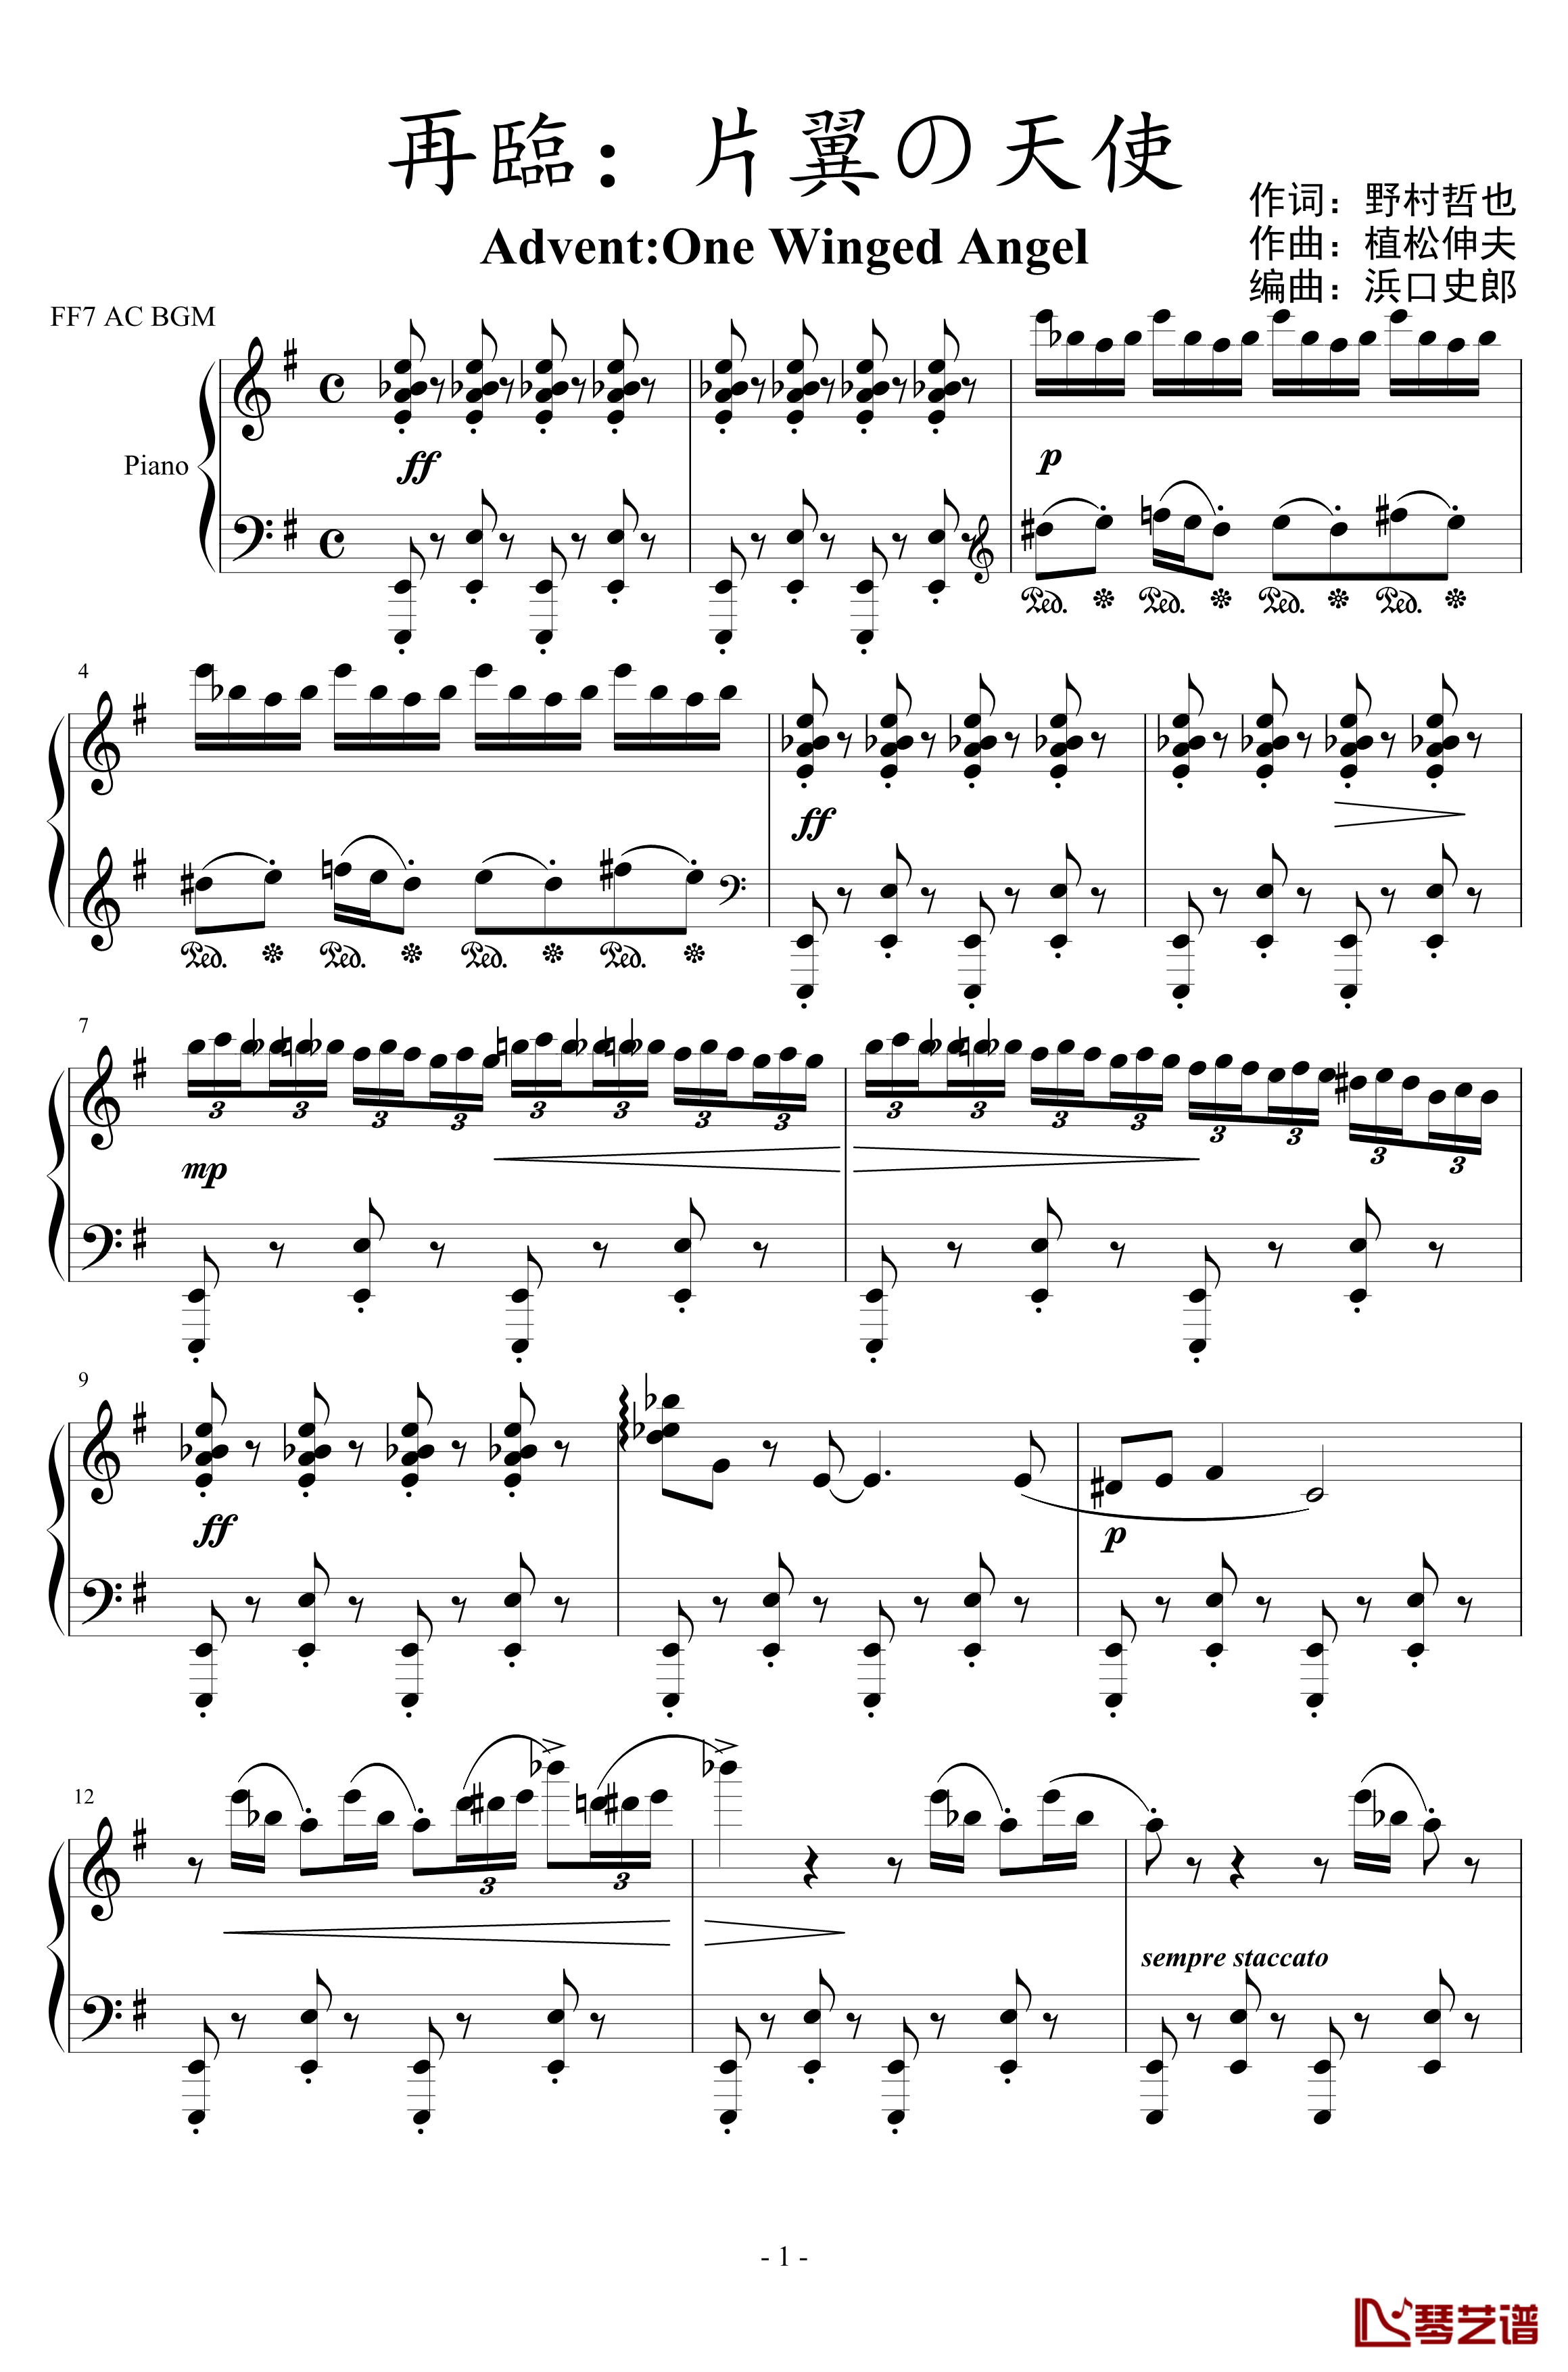 再临：单翼天使钢琴谱-植松伸夫1